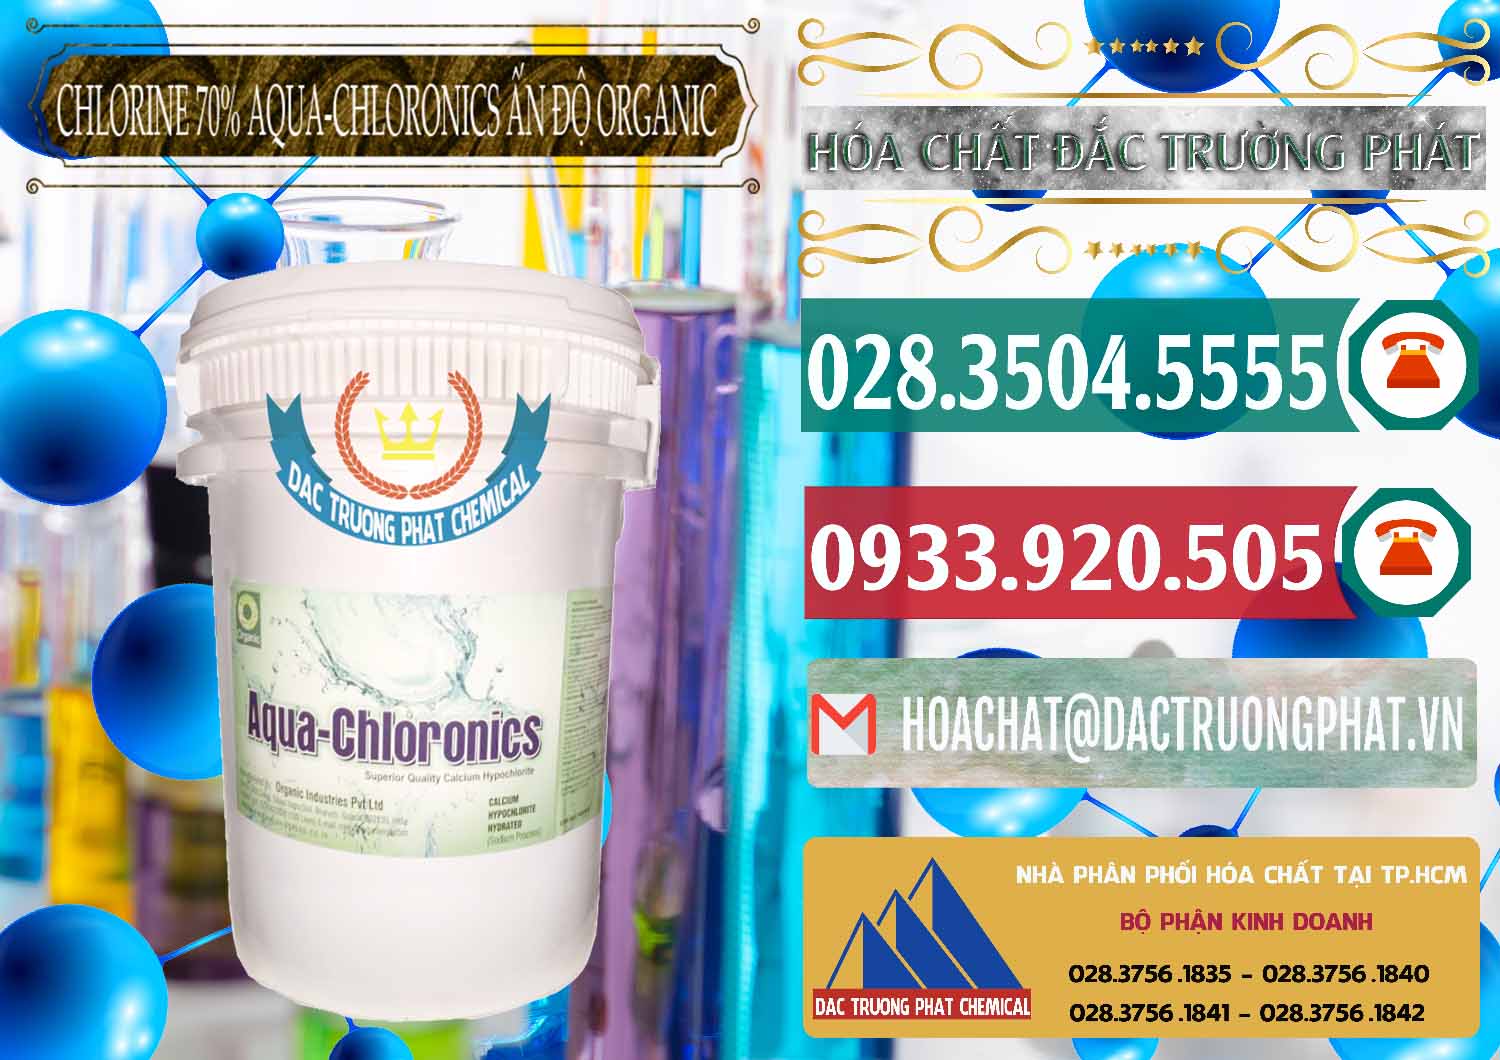 Cty chuyên cung cấp _ bán Chlorine – Clorin 70% Aqua-Chloronics Ấn Độ Organic India - 0211 - Nơi phân phối ( bán ) hóa chất tại TP.HCM - muabanhoachat.vn